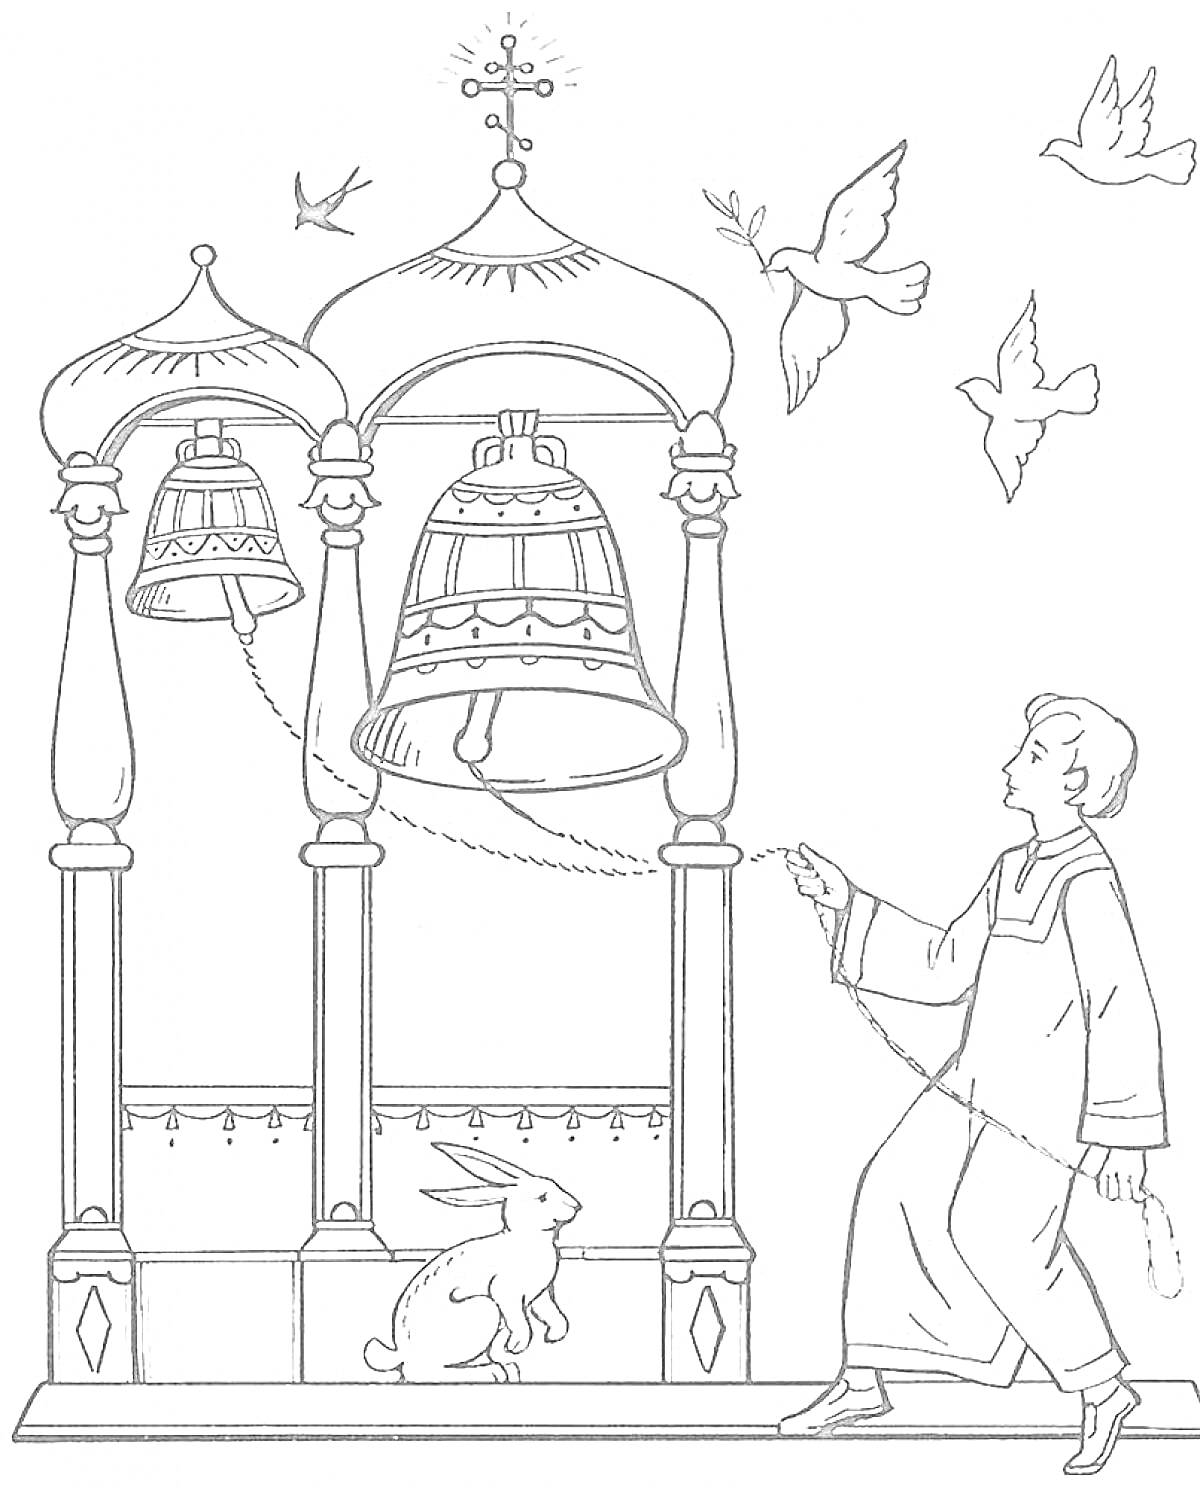 Раскраска Колокола под арками с человеком, зайцем и птицами